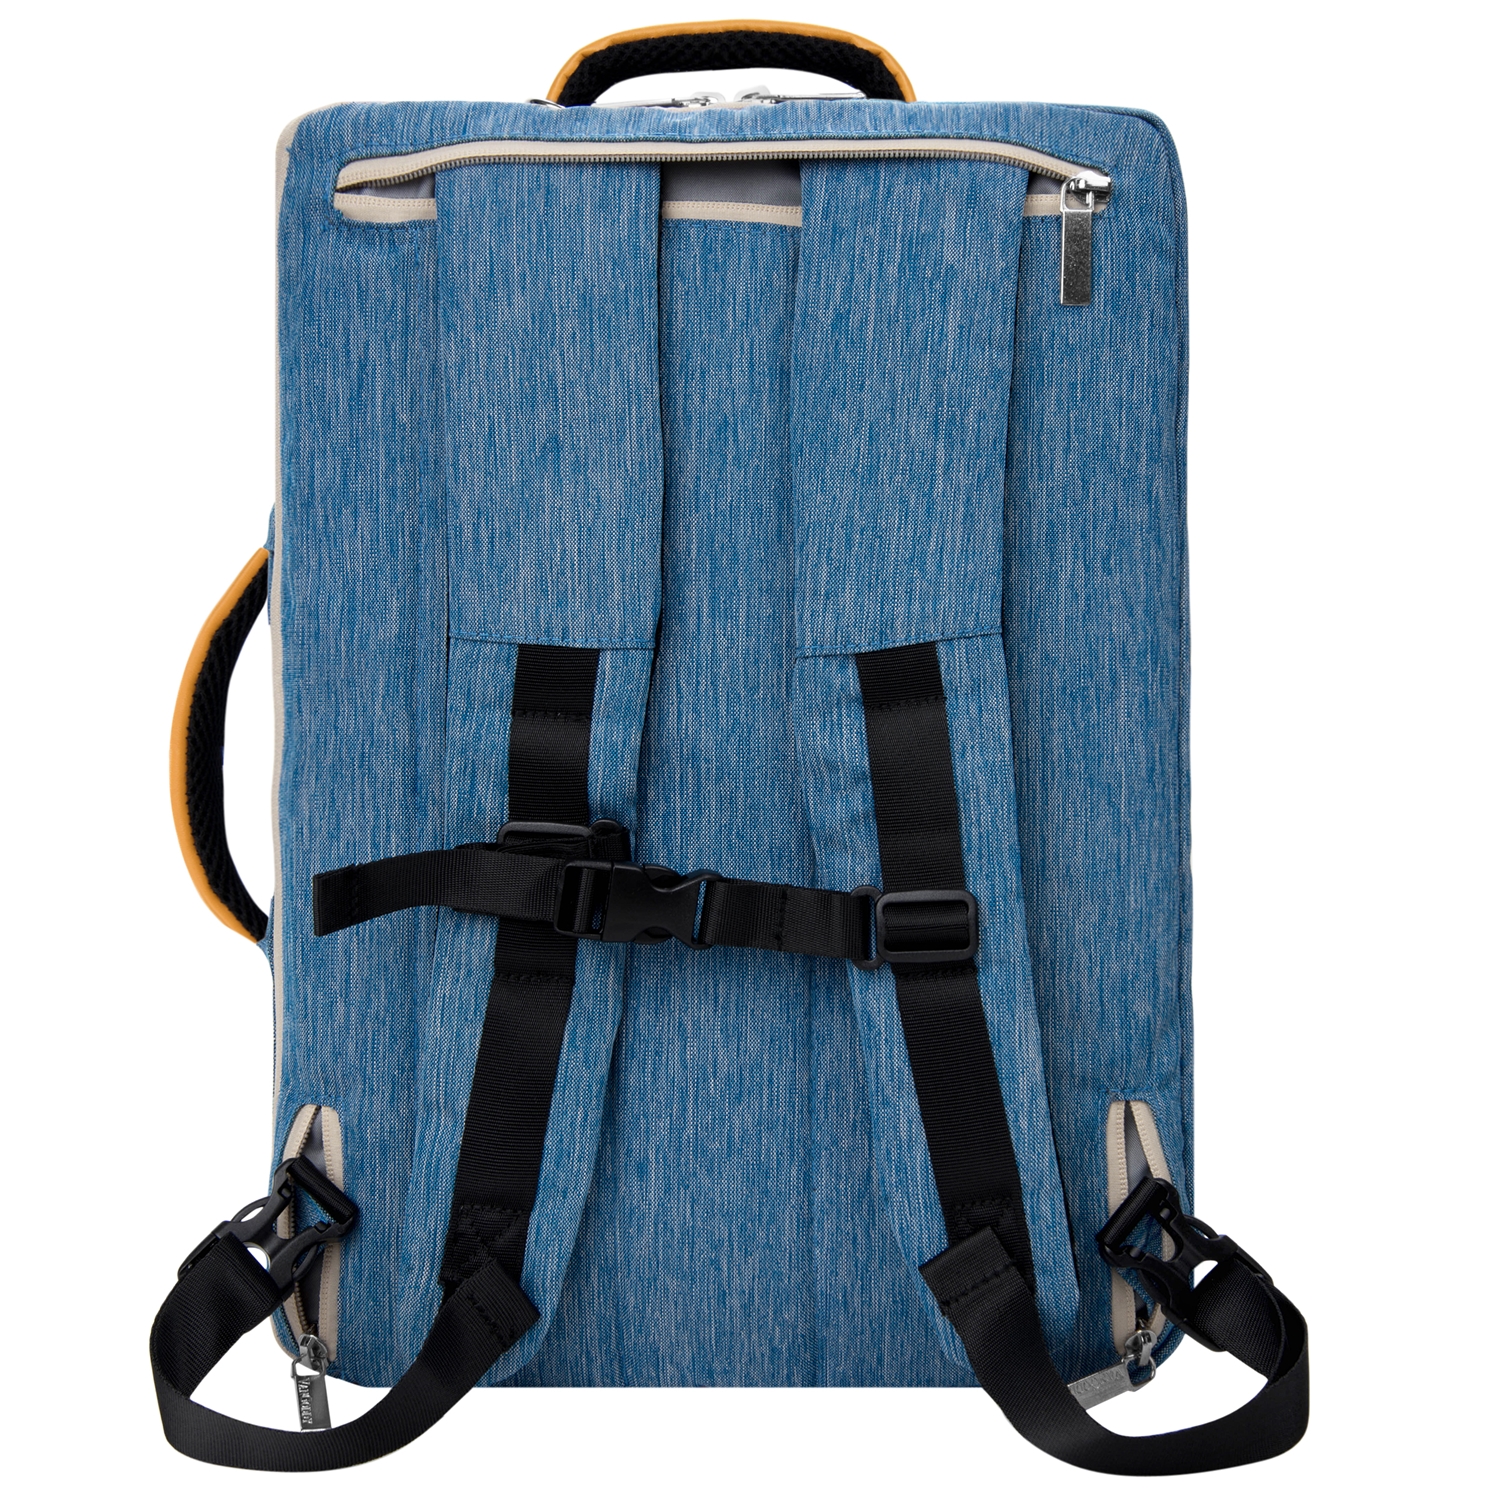 VANGODDY Slate Laptop Messenger / Carrying / Backpack Bag with Adjustable Strap fits 15.6 Laptops